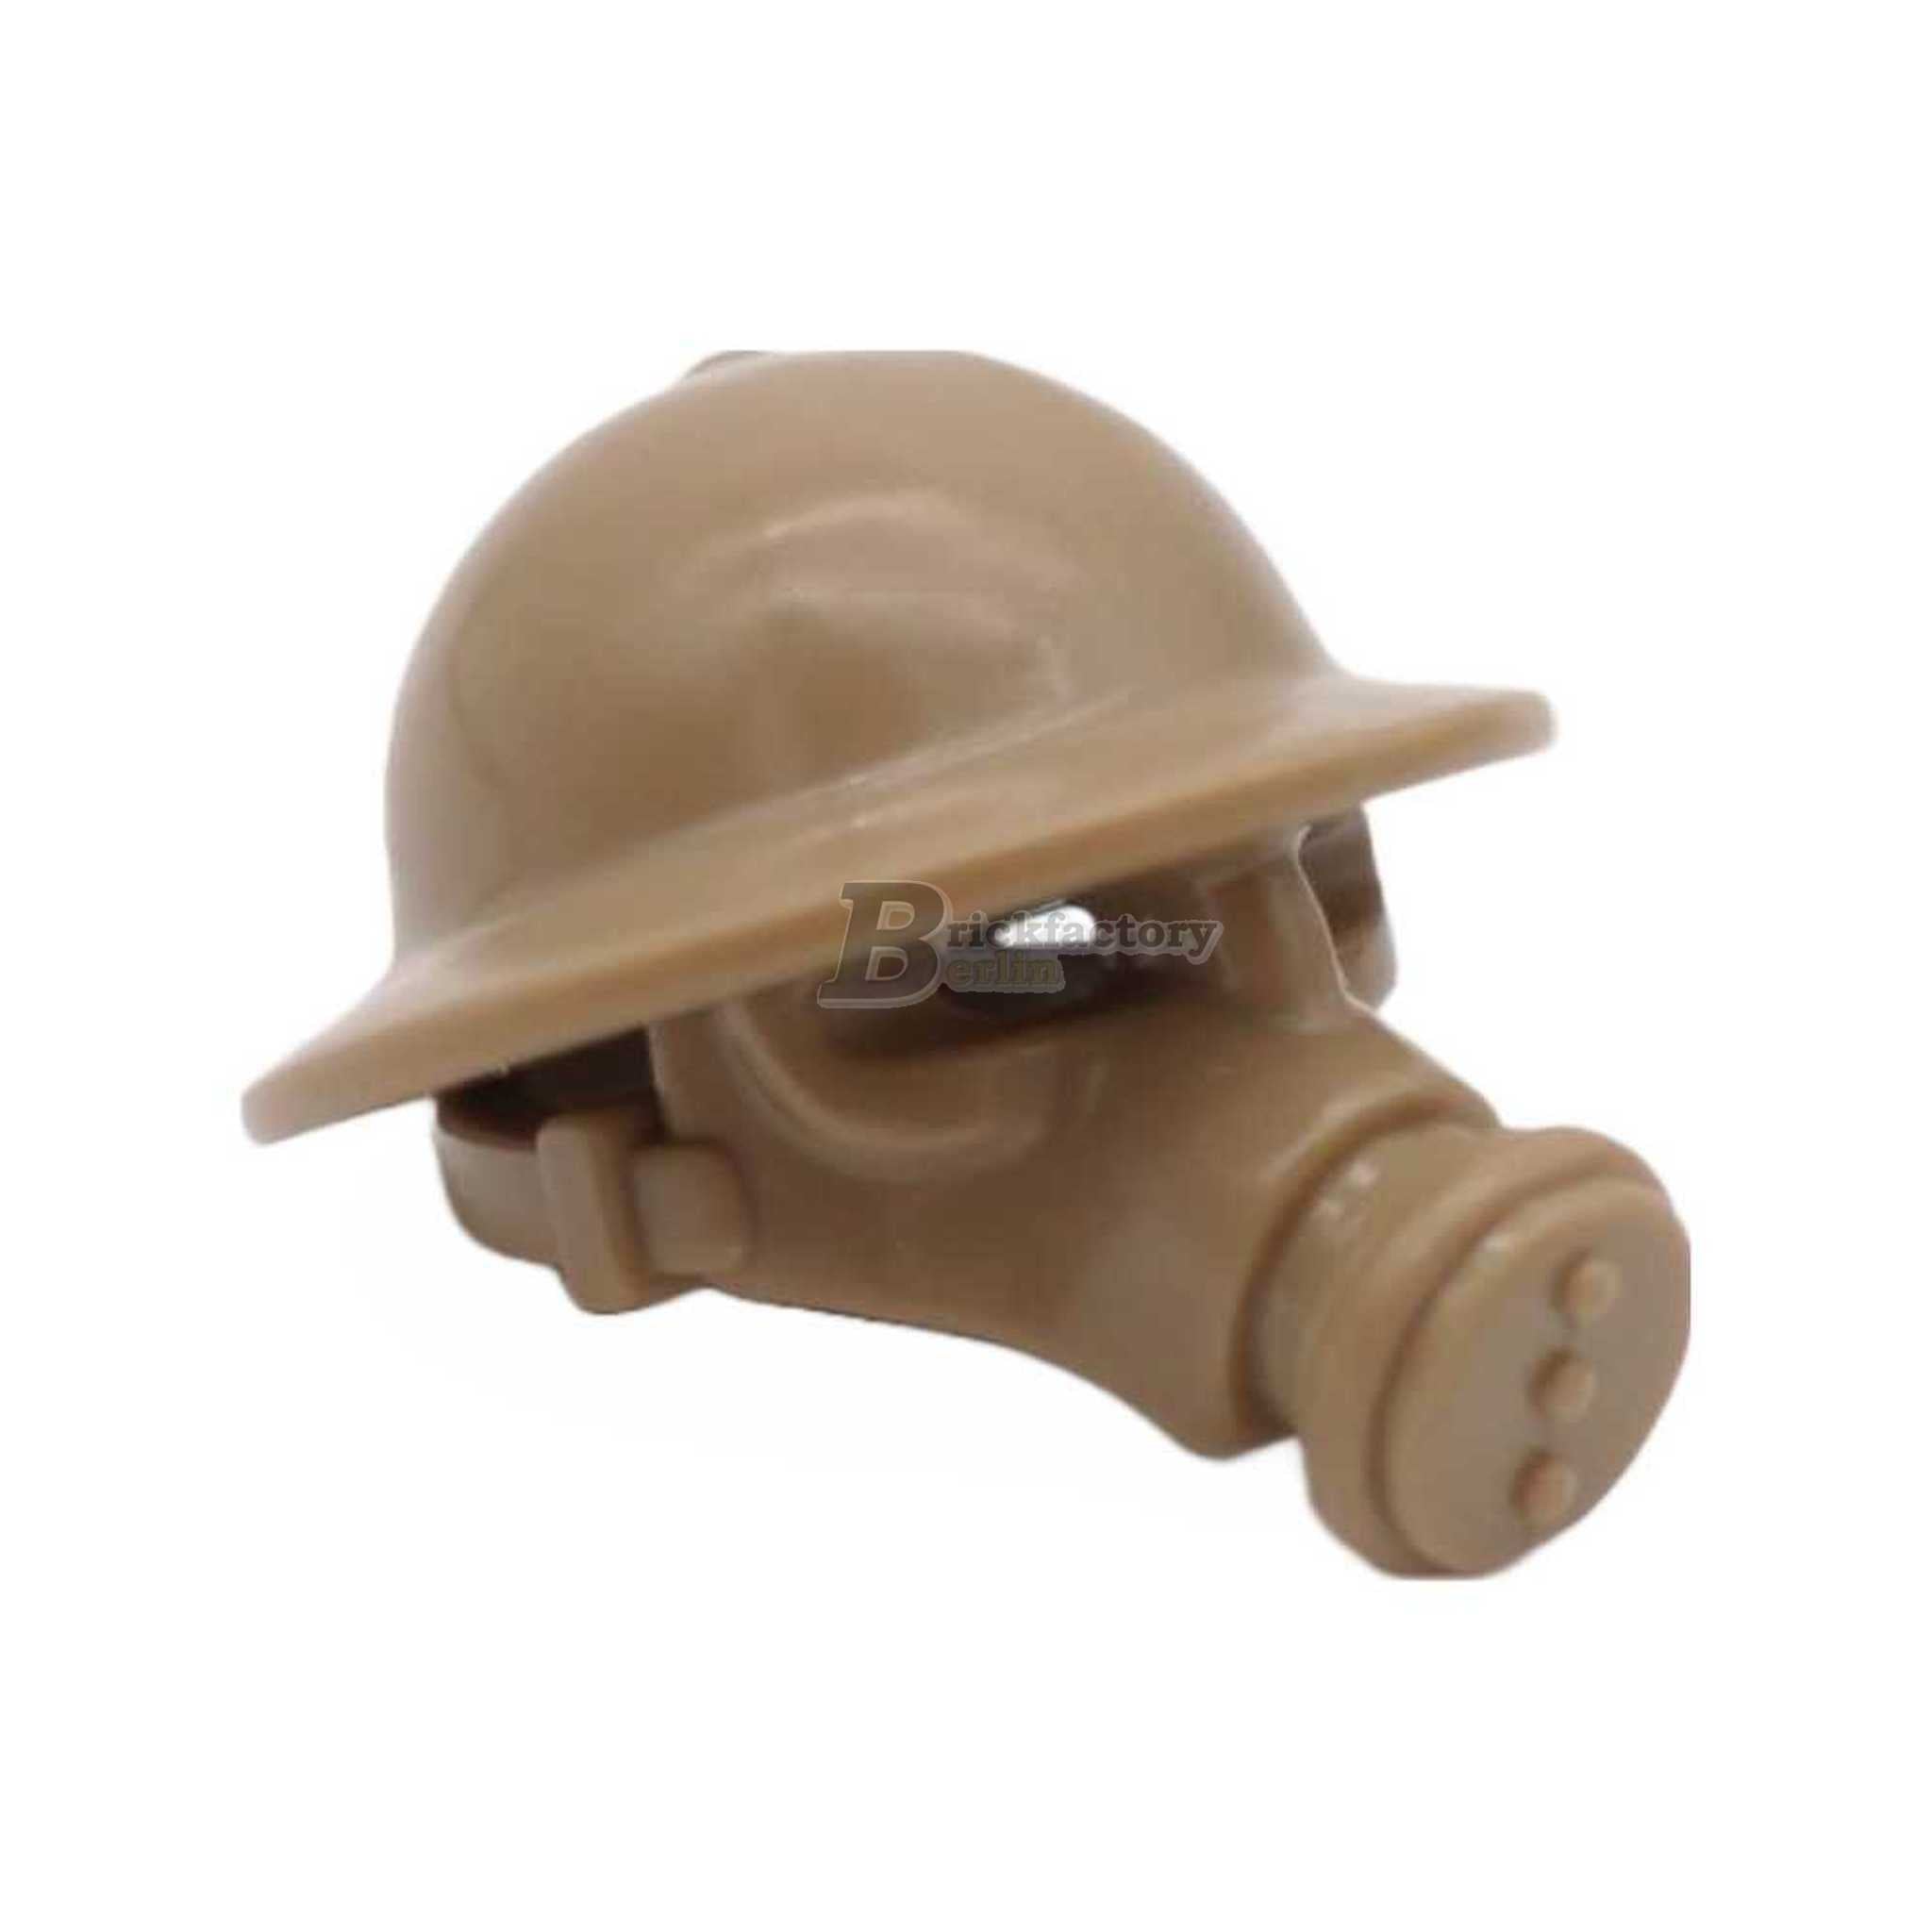 BF-0506 -WWII Helmet Gas Mask Brodie England (Brickfactory)